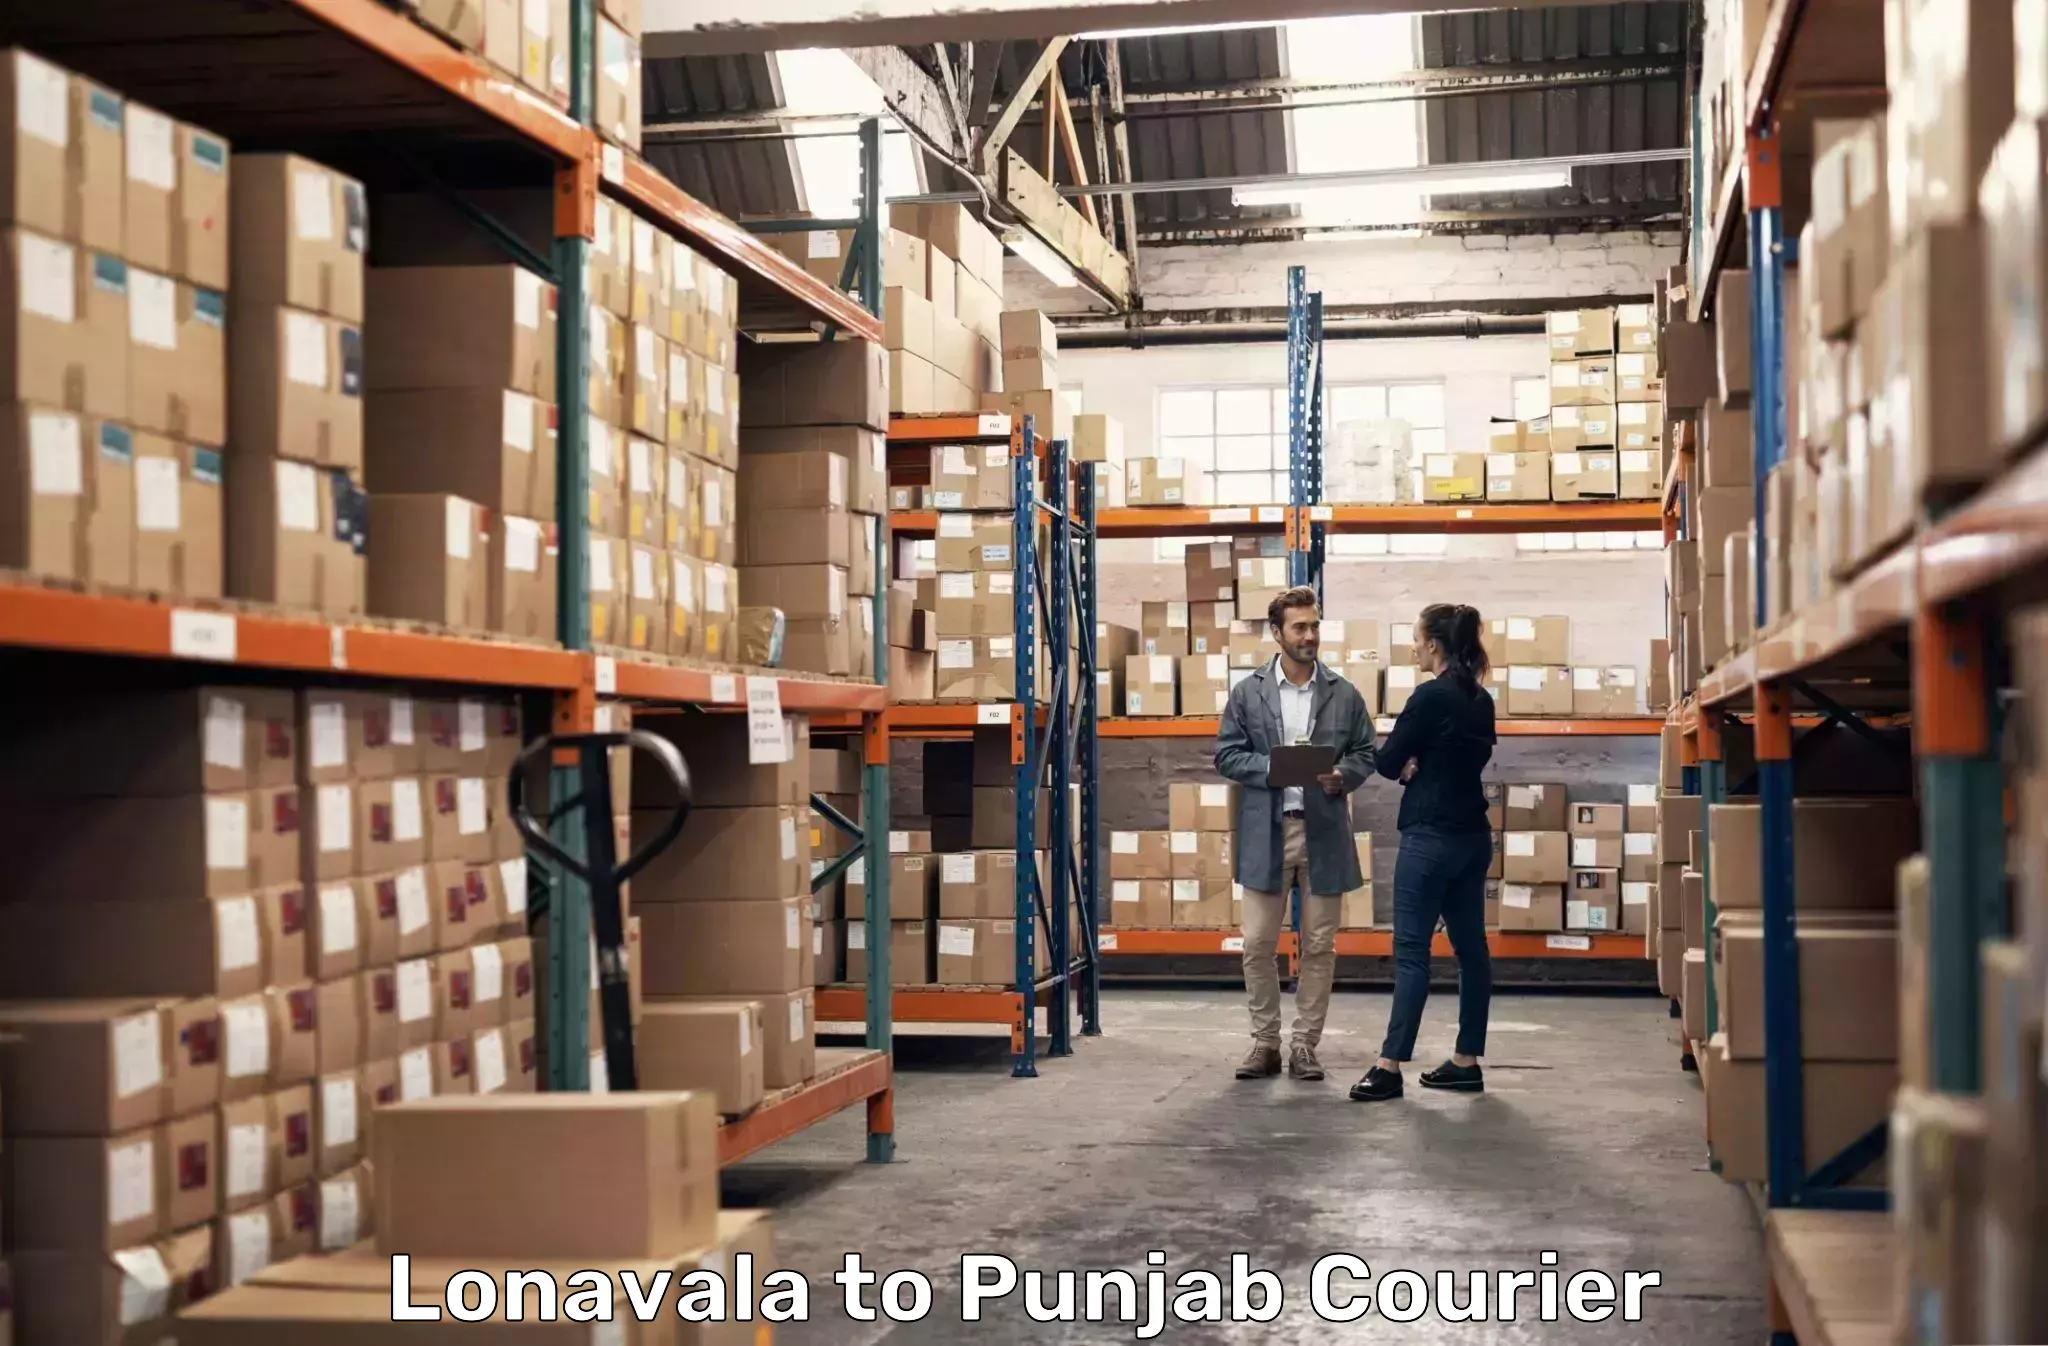 High-capacity parcel service Lonavala to Rampura Phul